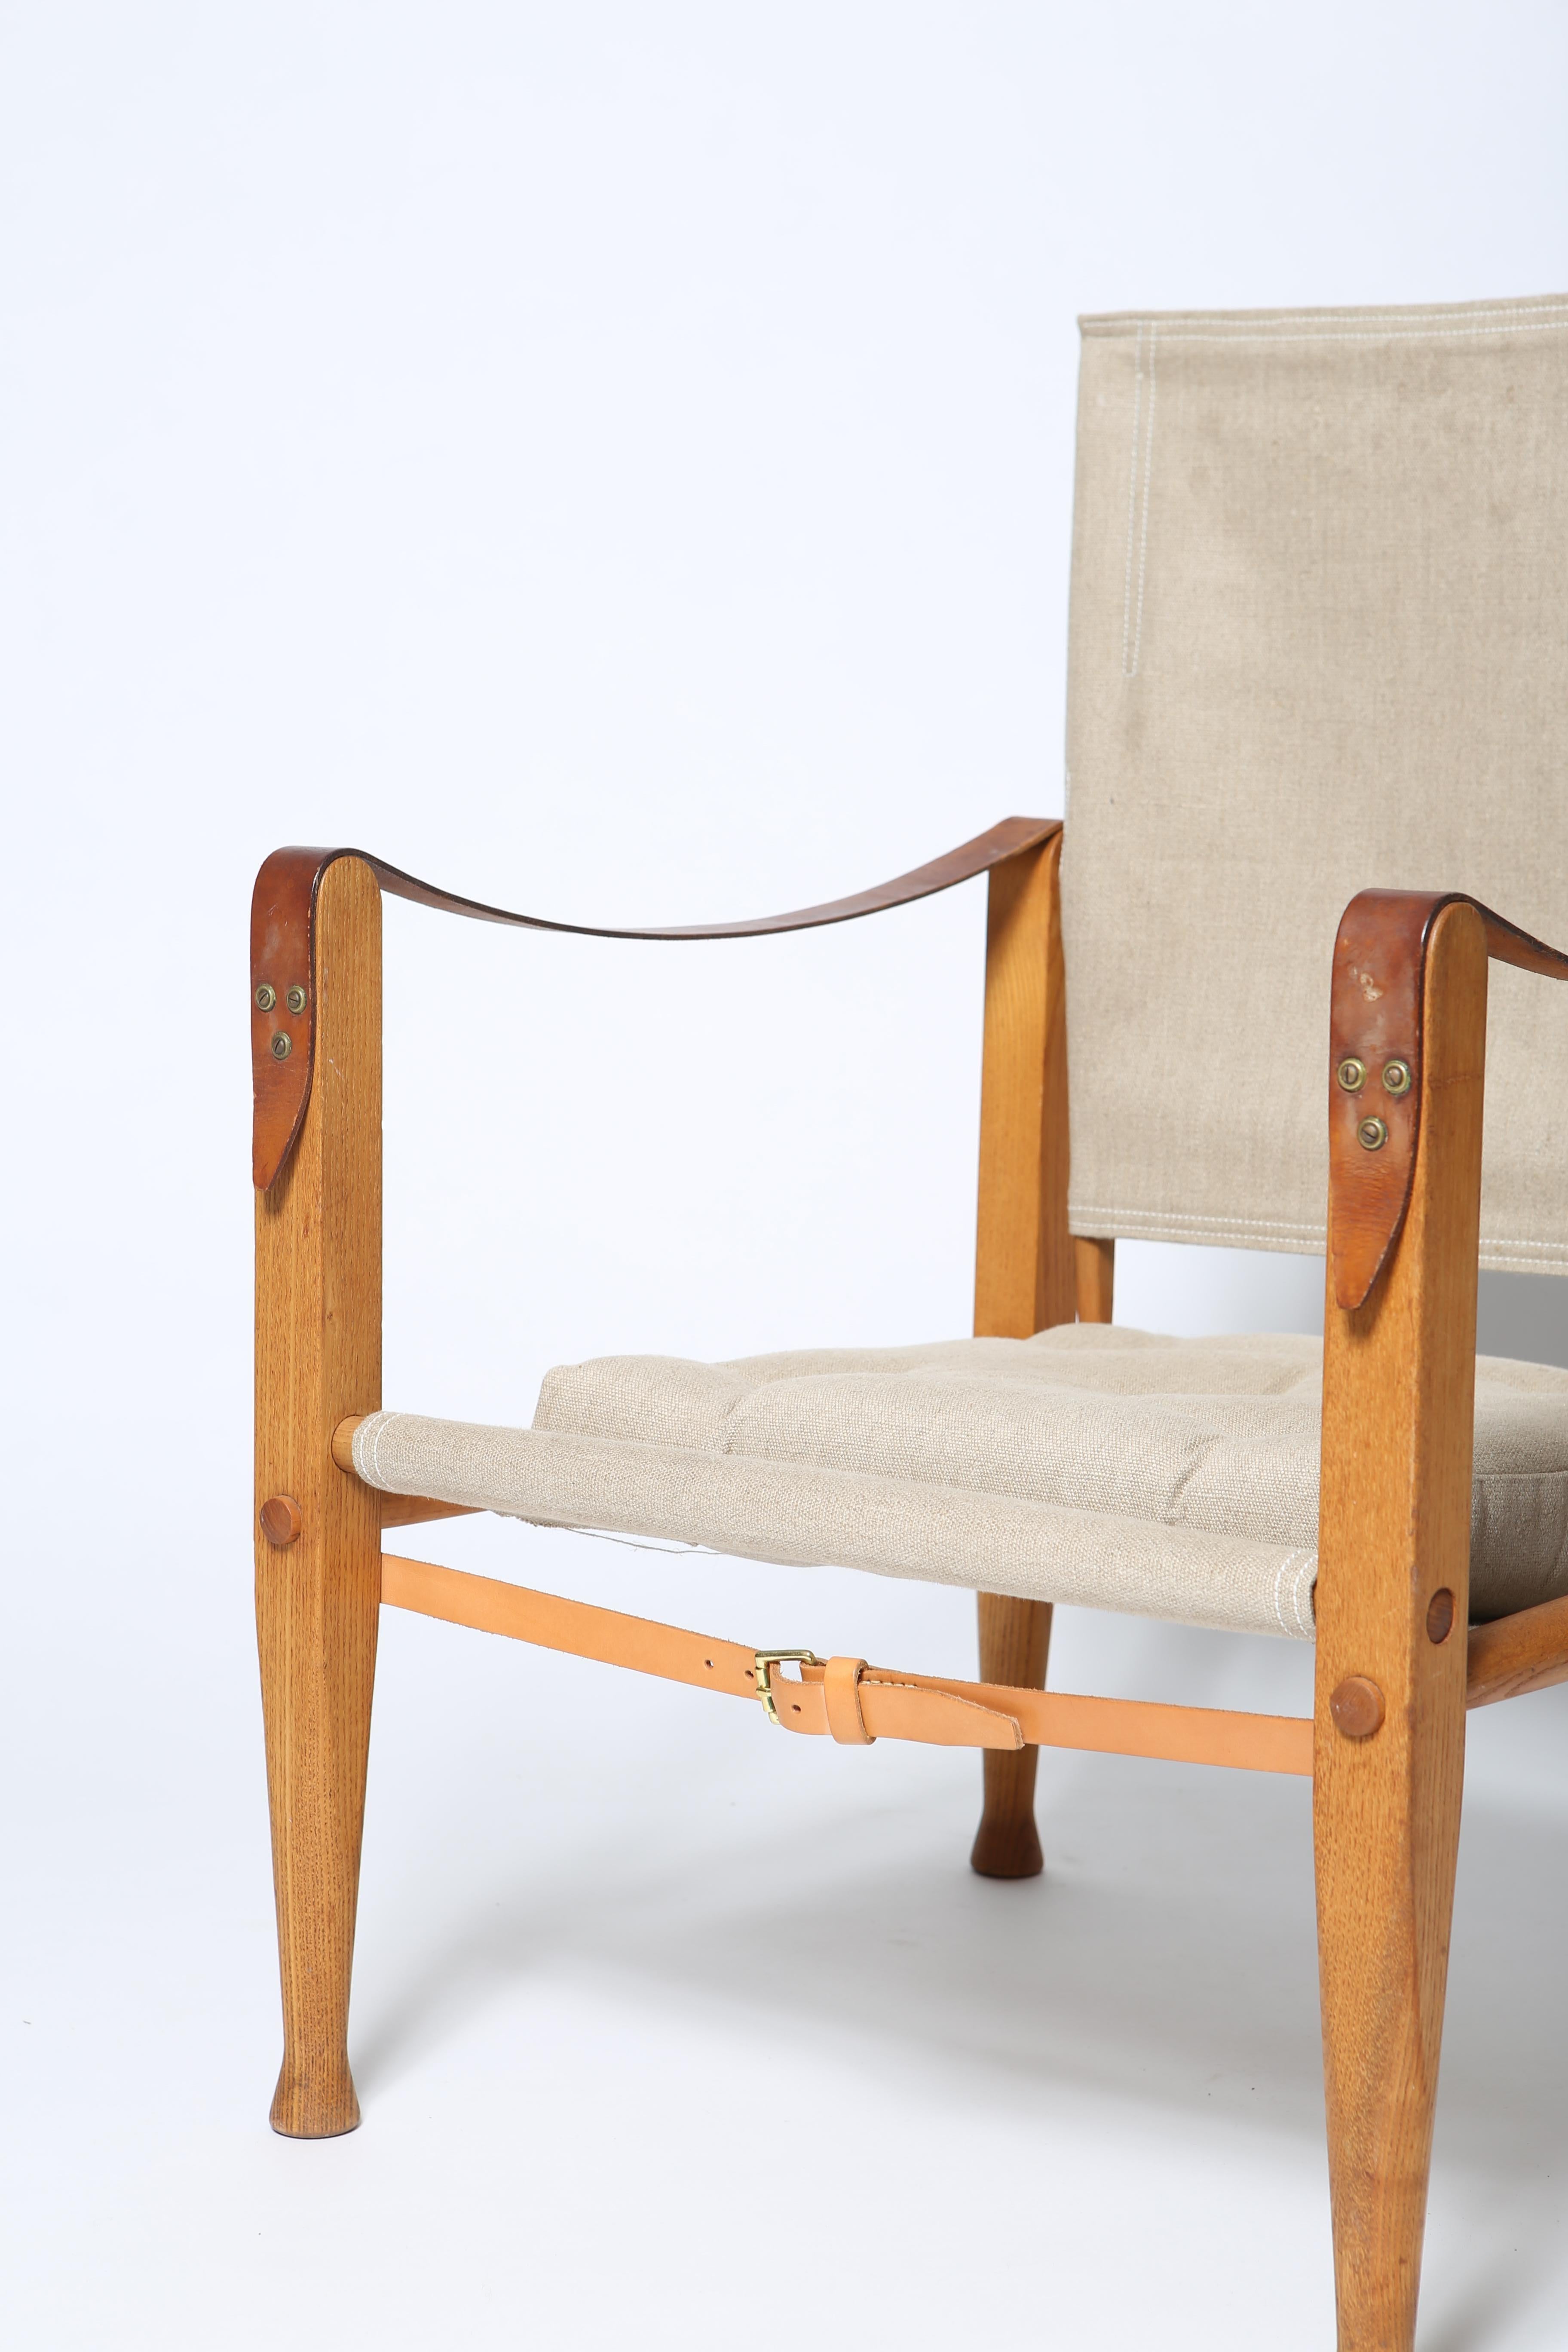 Der ikonische Original-Safaristuhl von Professor Kaare Klint. Entworfen 1927. Diese Version stammt aus den 1960er Jahren und ist aus massivem Eschenholz gefertigt. Das Holz hat eine schöne Patina und ist unrestauriert. Die Segeltuchelemente sind